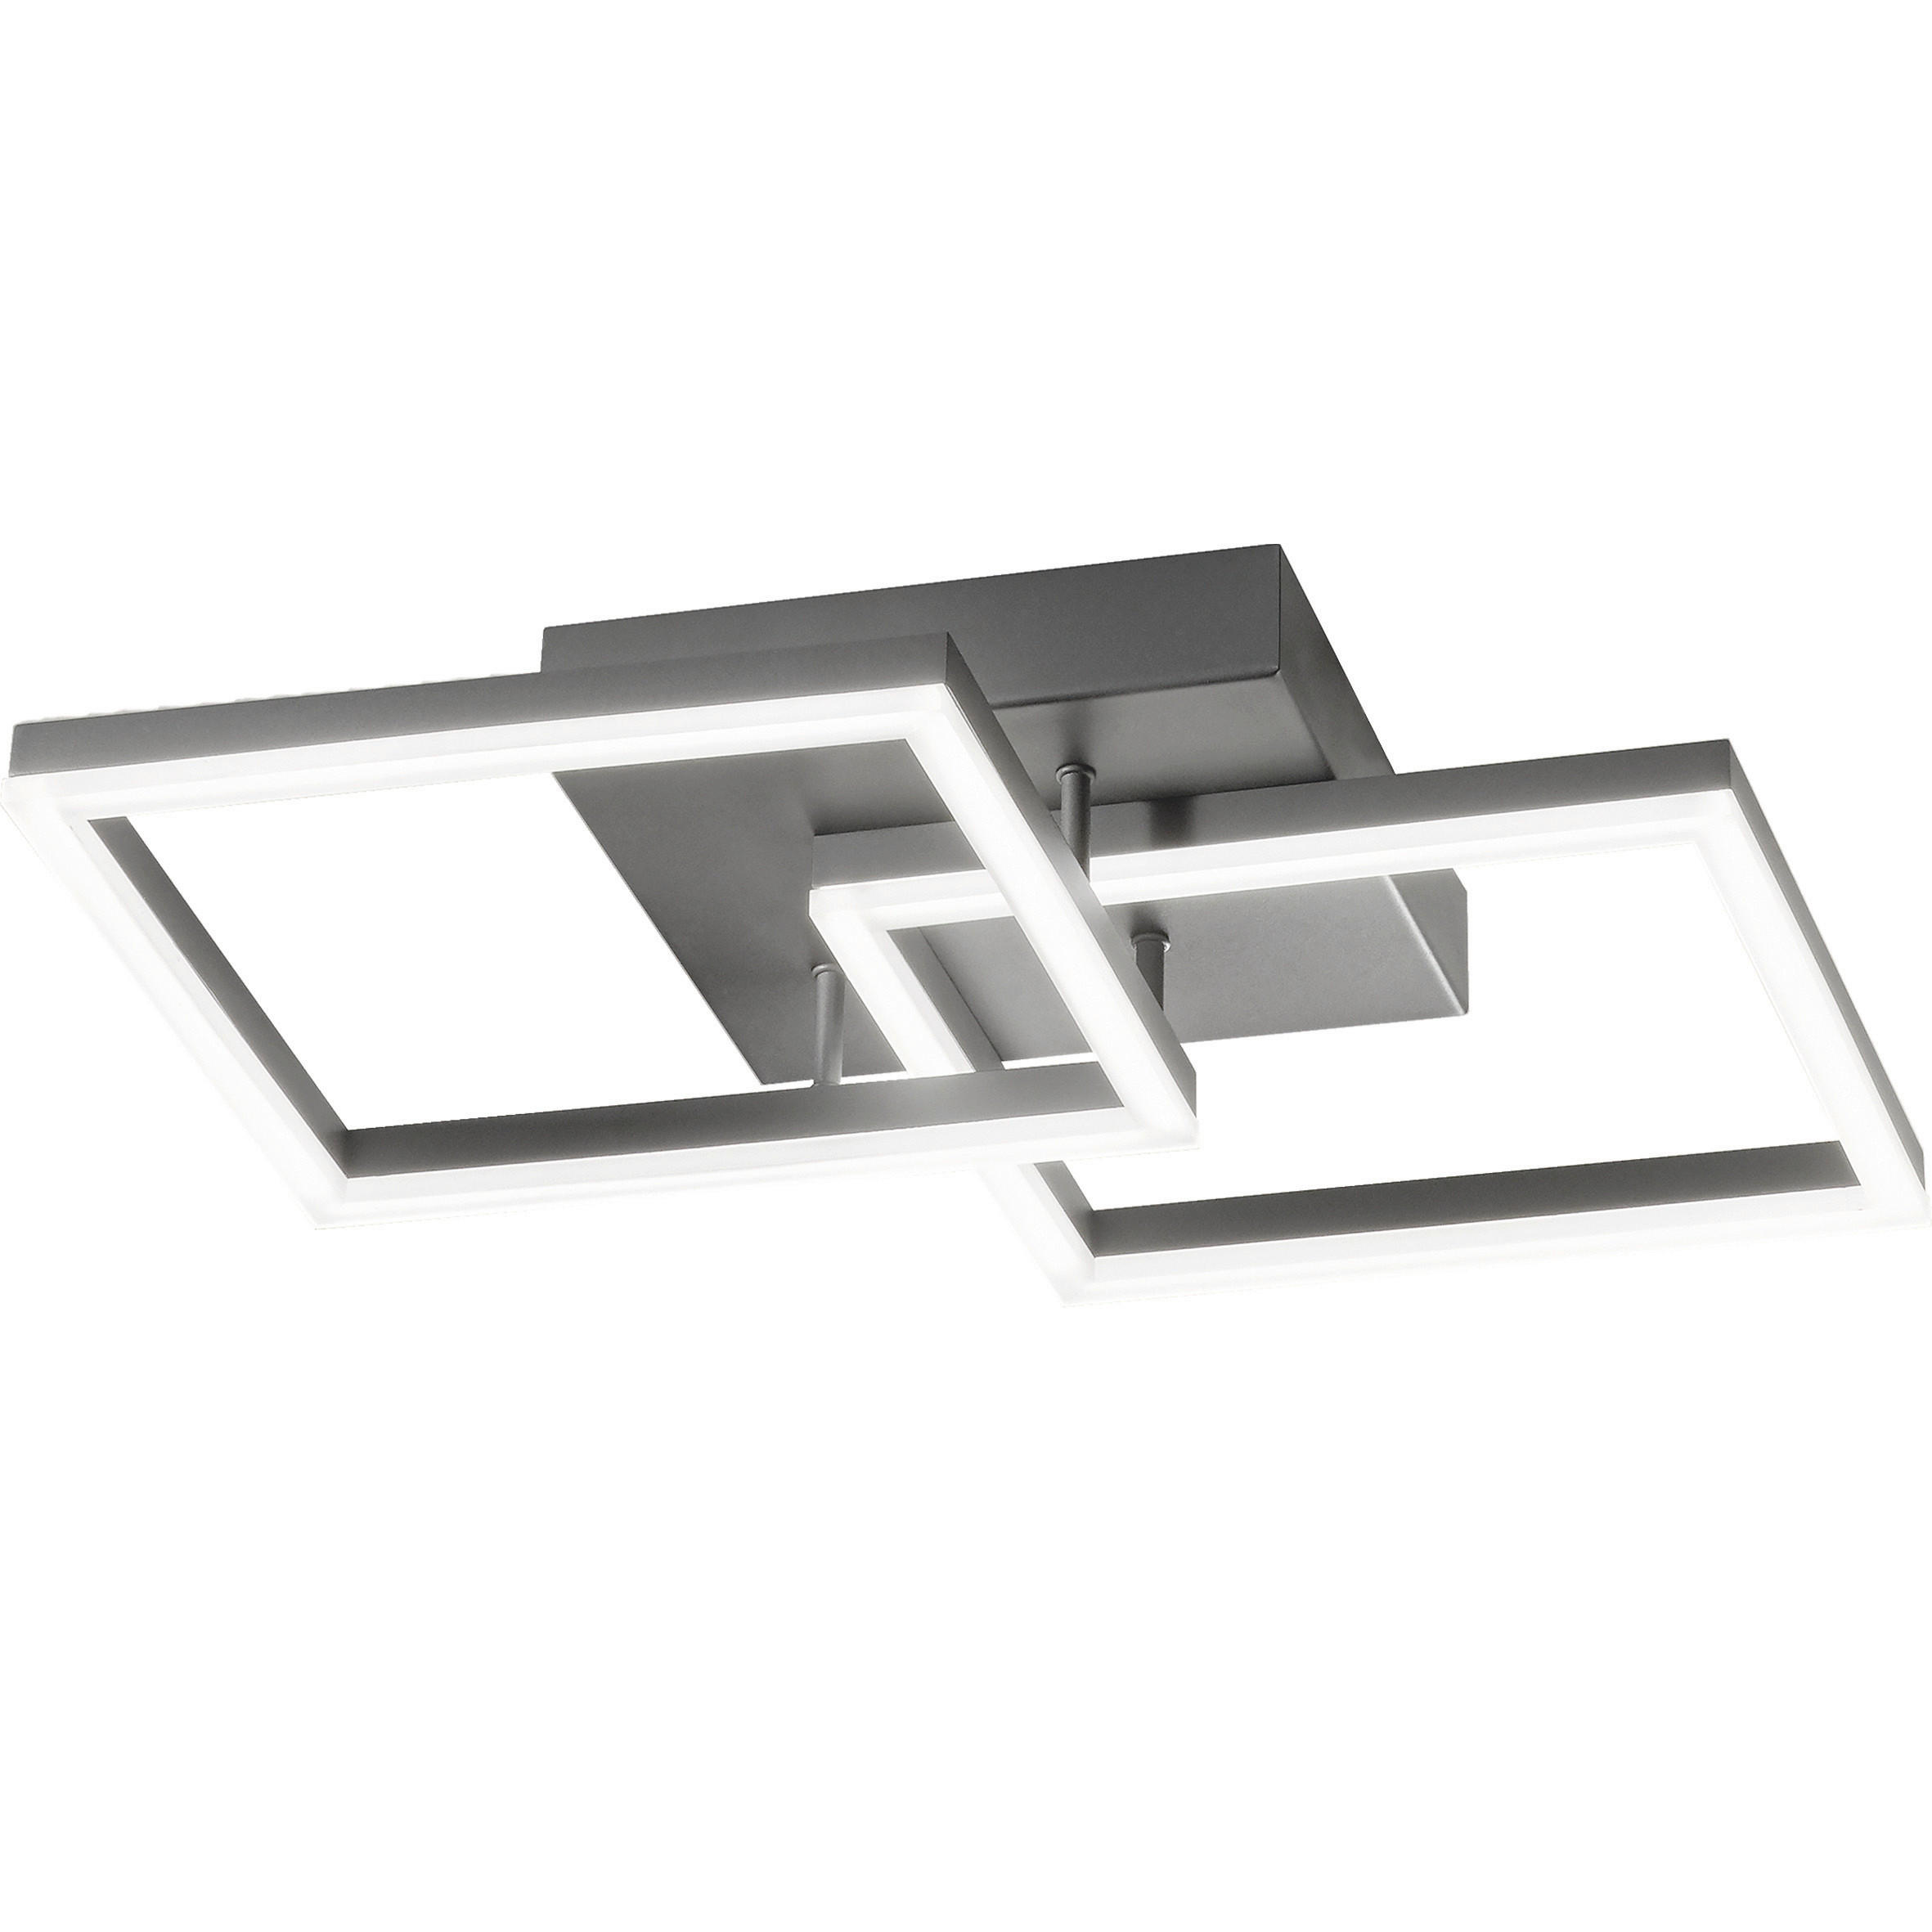 LED-WANDLEUCHTE Bard 45/45/10 cm   - Anthrazit, Design, Kunststoff/Metall (45/45/10cm) - Fabas Luce